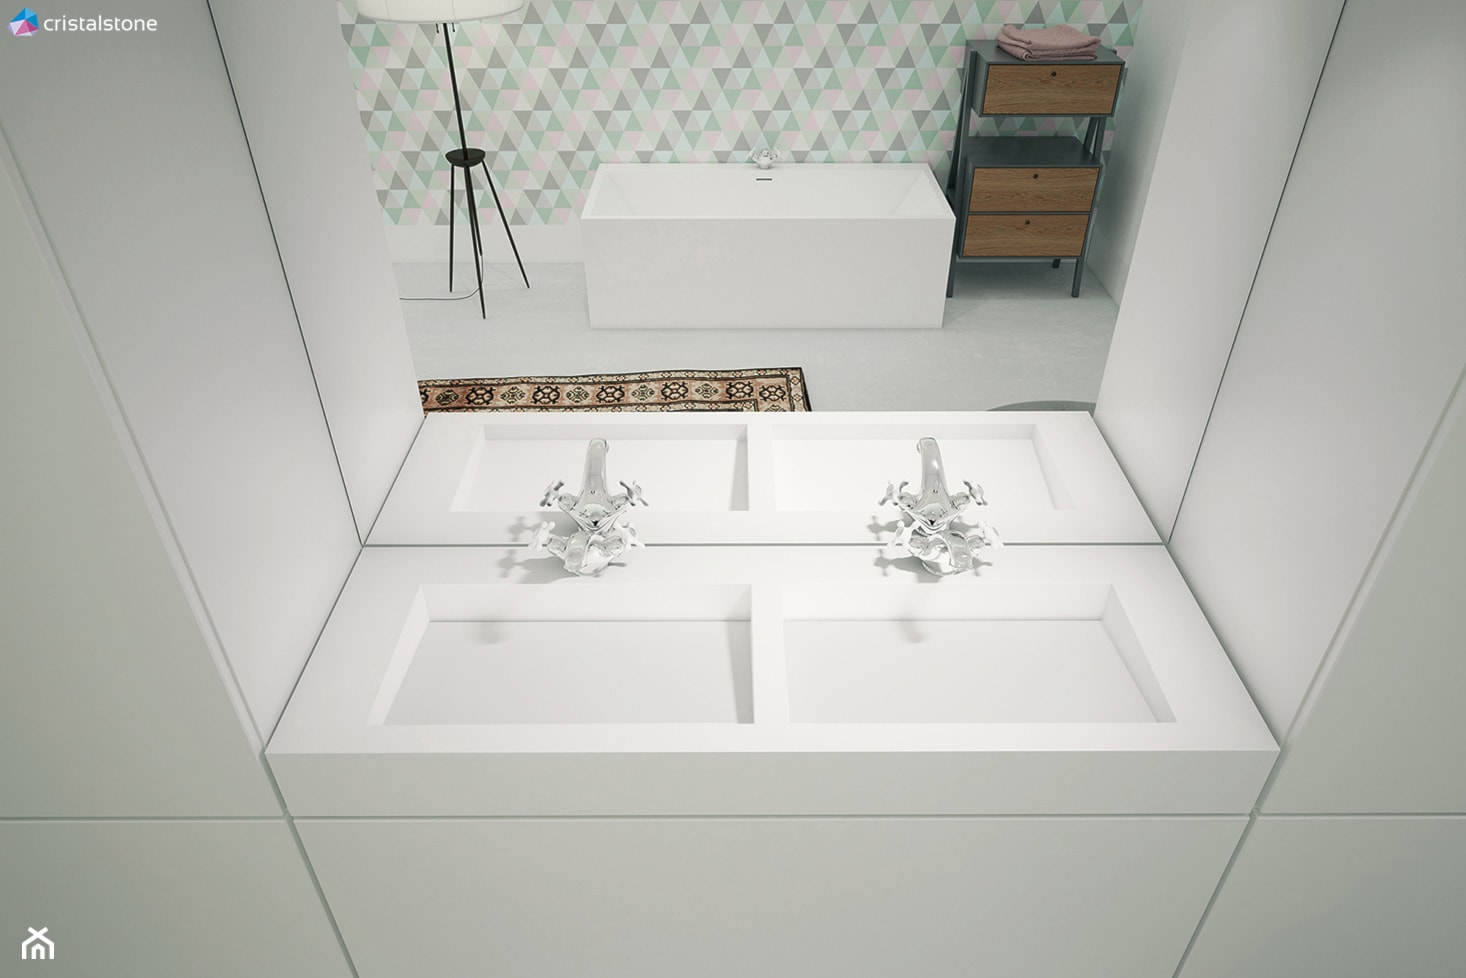 Minimalistyczna łazienka z Sztokholmie - Łazienka, styl nowoczesny - zdjęcie od Cristalstone - Homebook